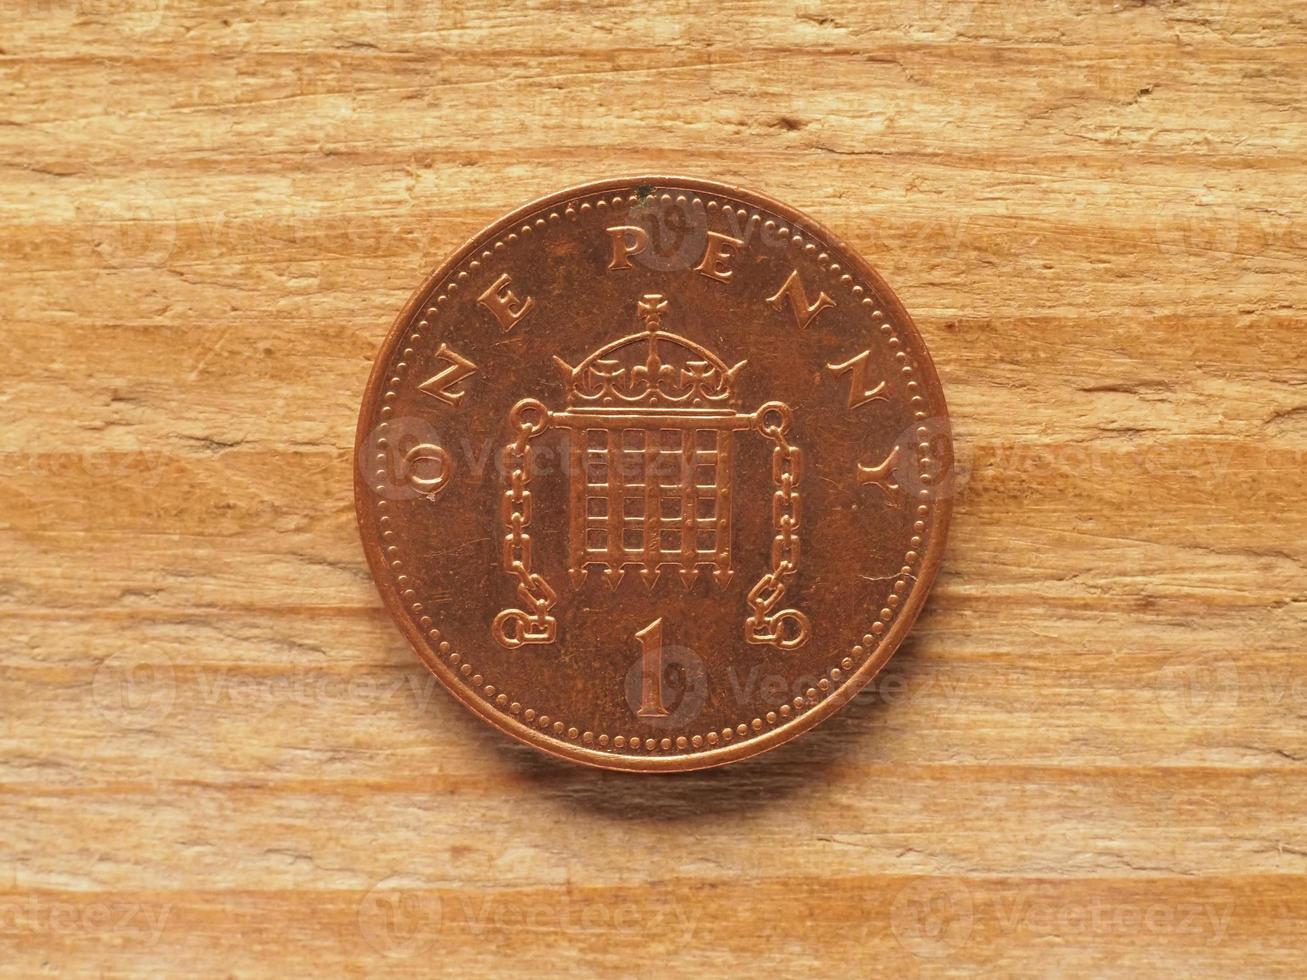 1-Penny-Münze, Rückseite, Währung des Vereinigten Königreichs foto